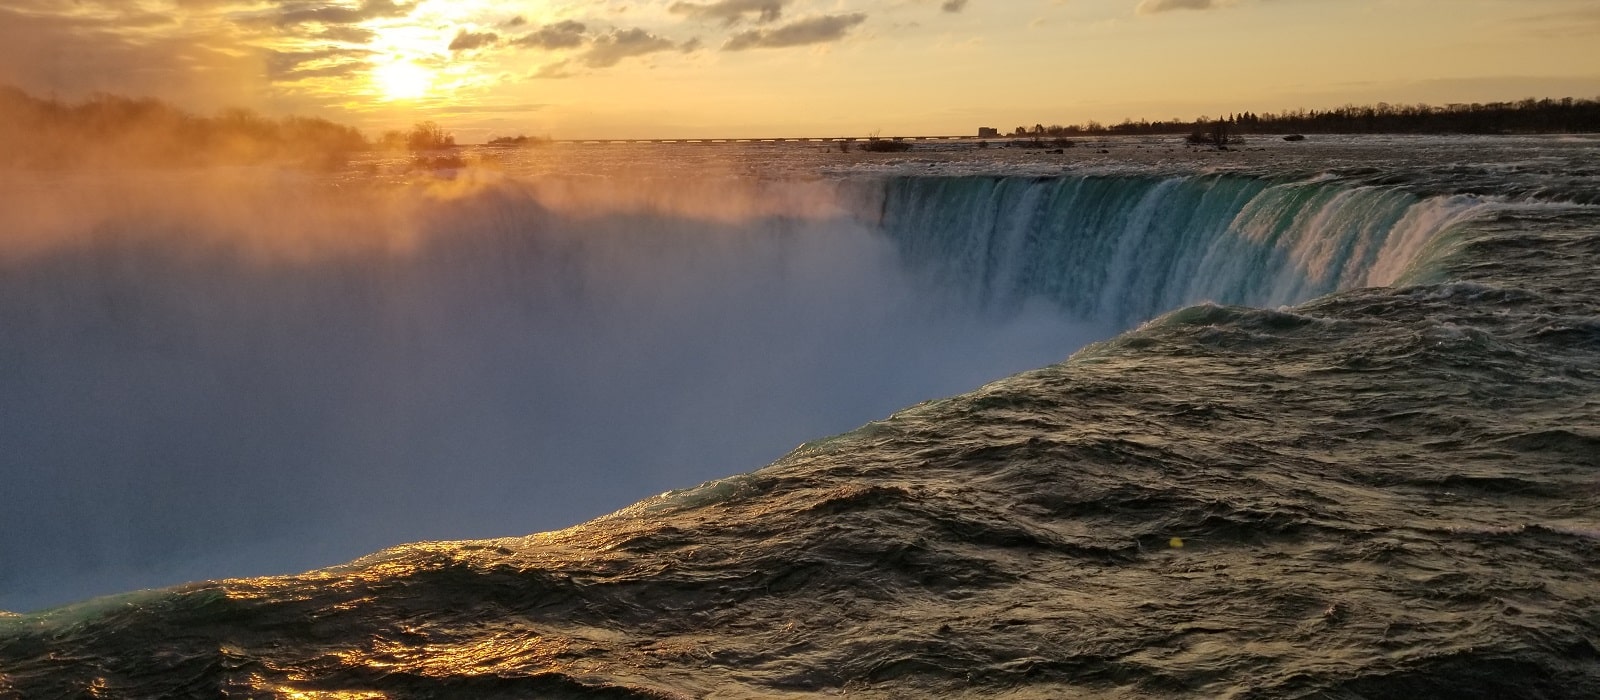 Enter to Win a Trip to Niagara Falls | Niagara Falls Hotels